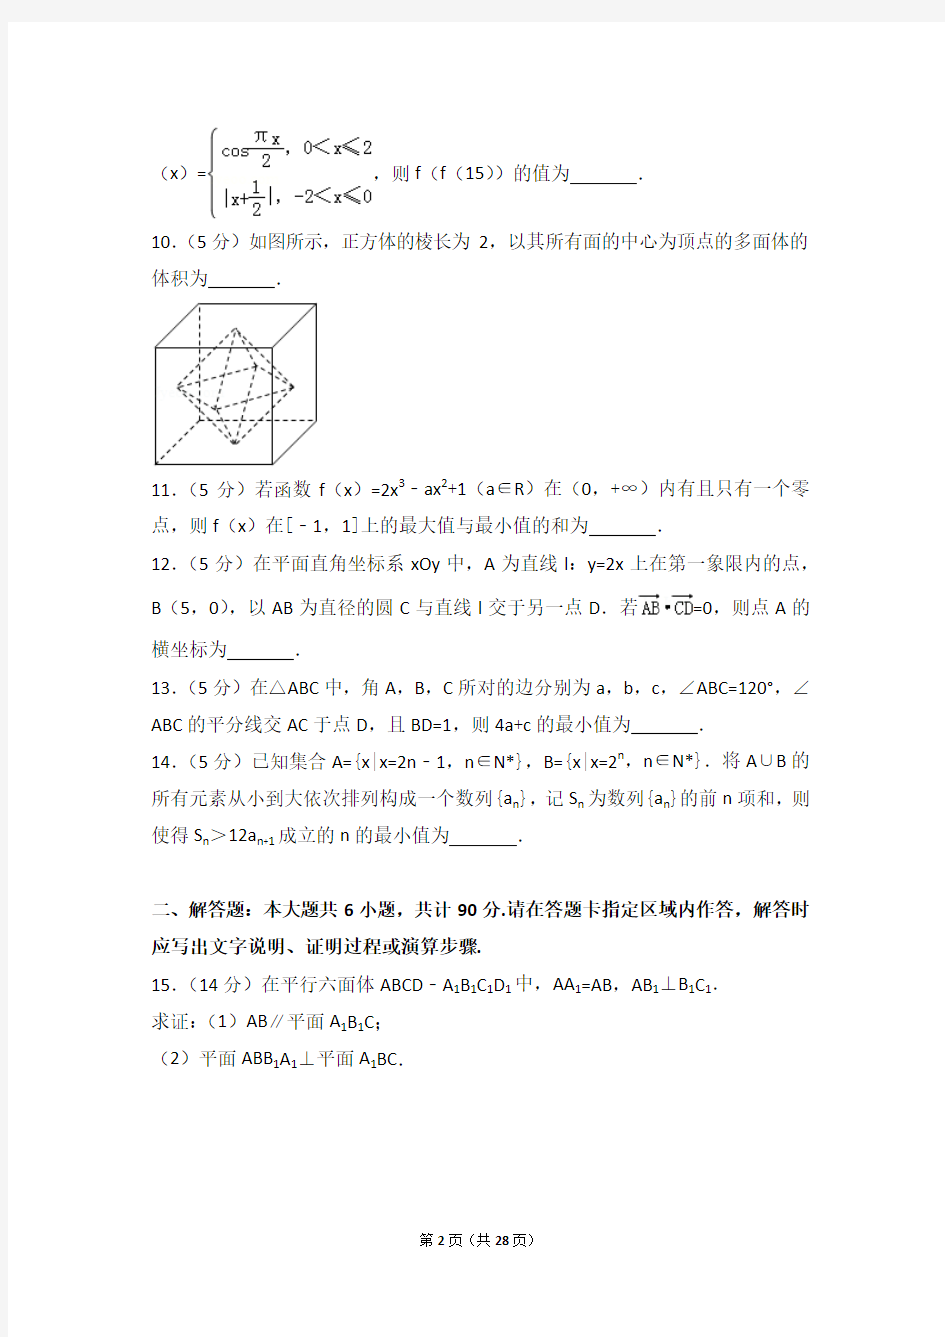 2018年江苏省高考数学试卷(含详细答案解析)